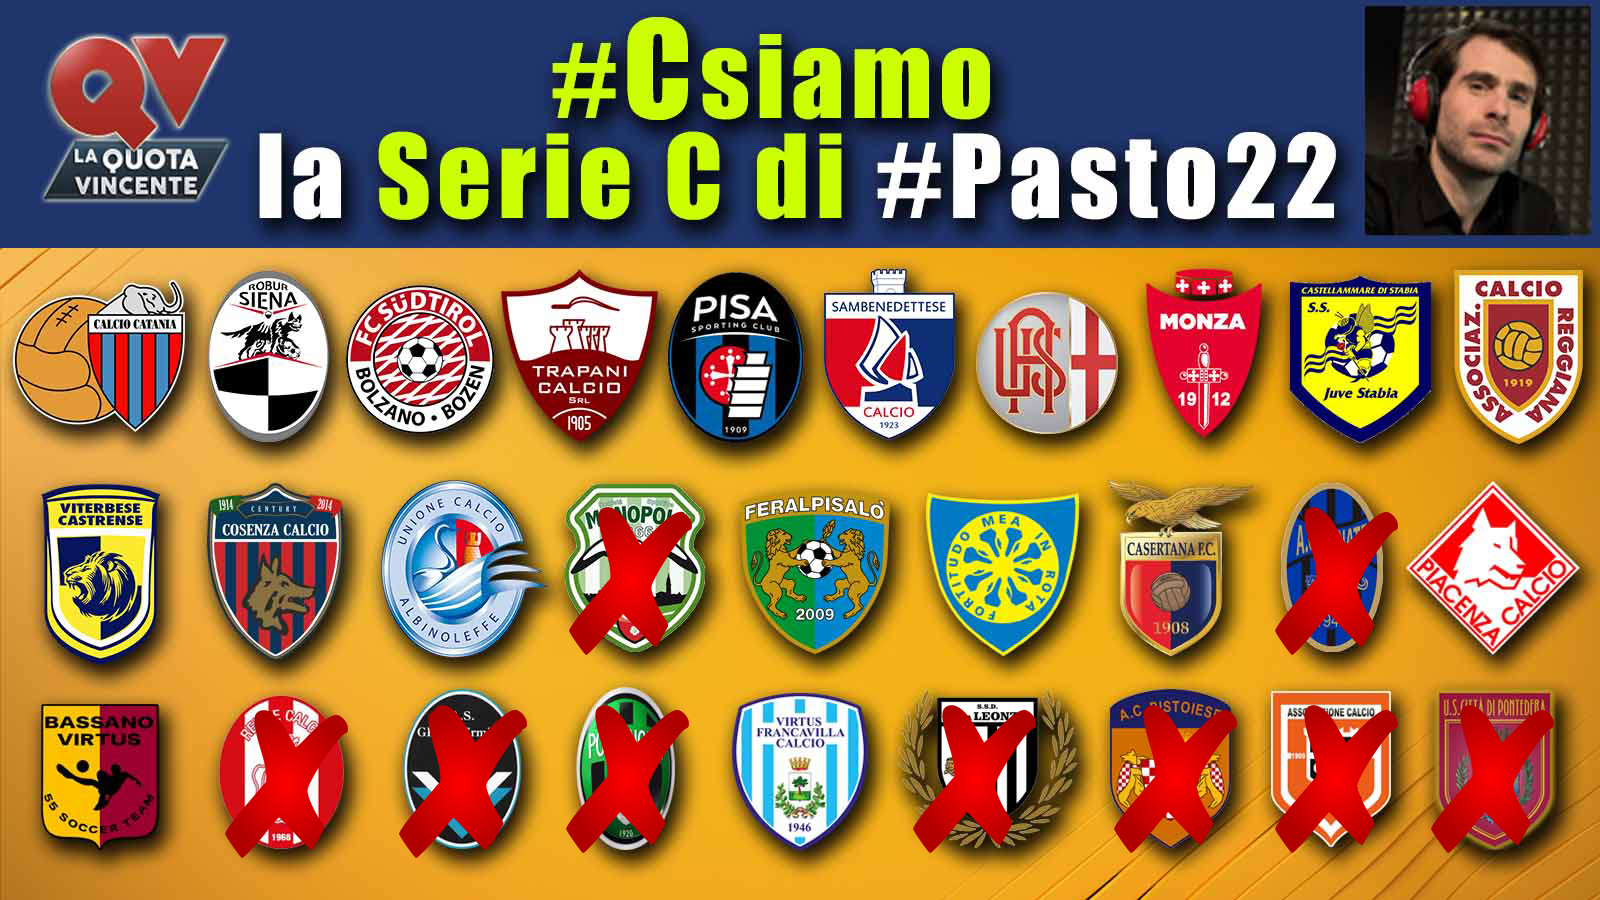 Pronostici Serie C martedì 15 maggio: #Csiamo, il blog di #Pasto22 speciale playoff